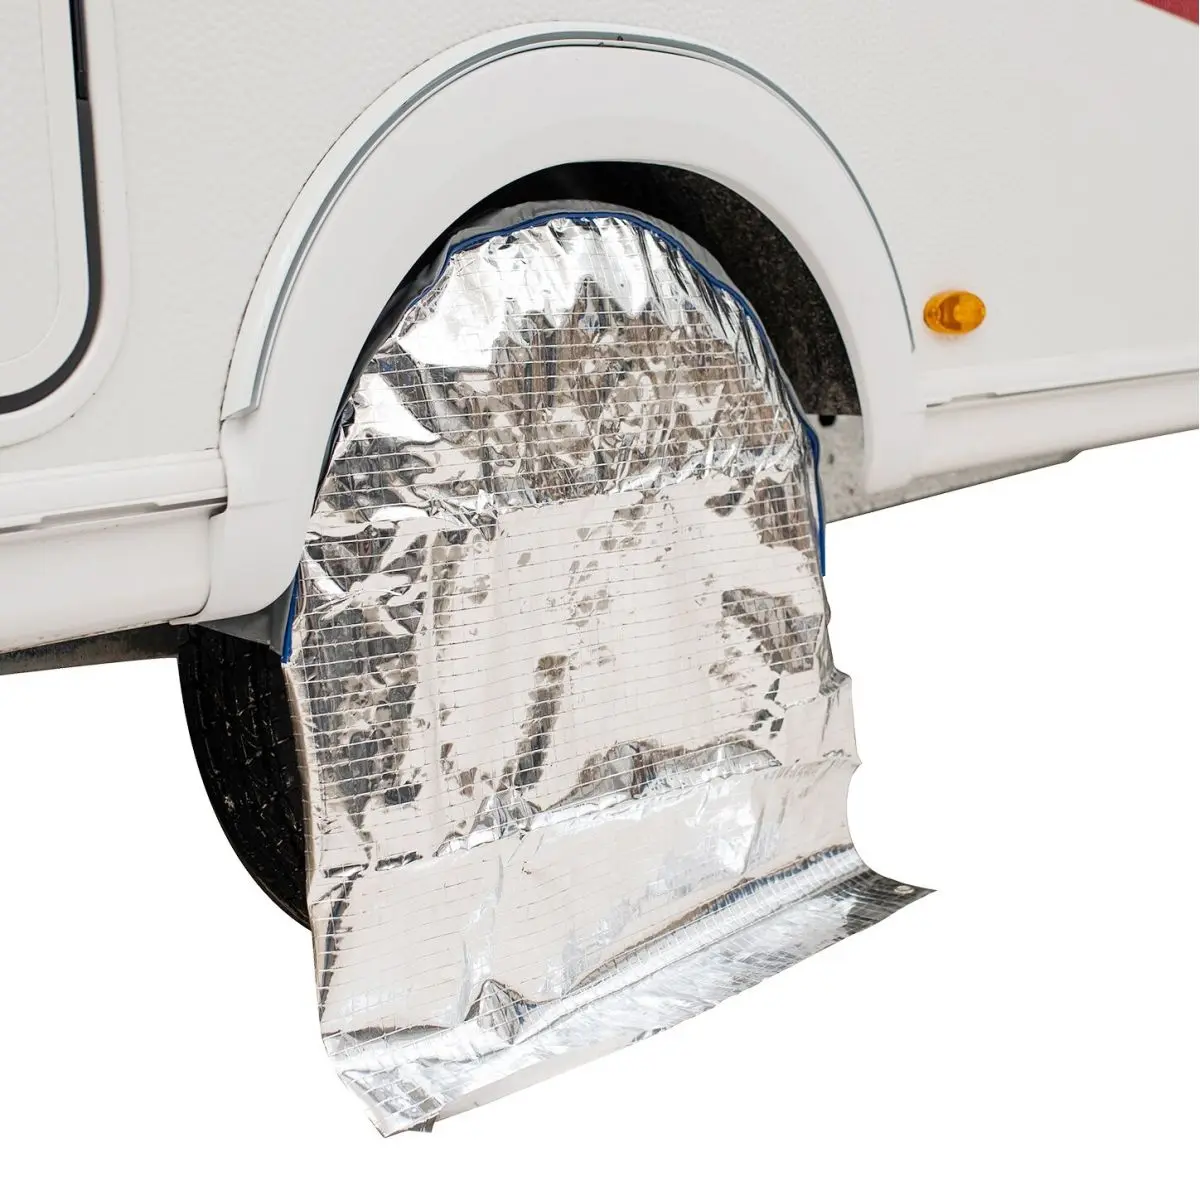 Ochranné kryty kolies s odrazom slnka pre obytné vozidlá so 16" pneumatikami